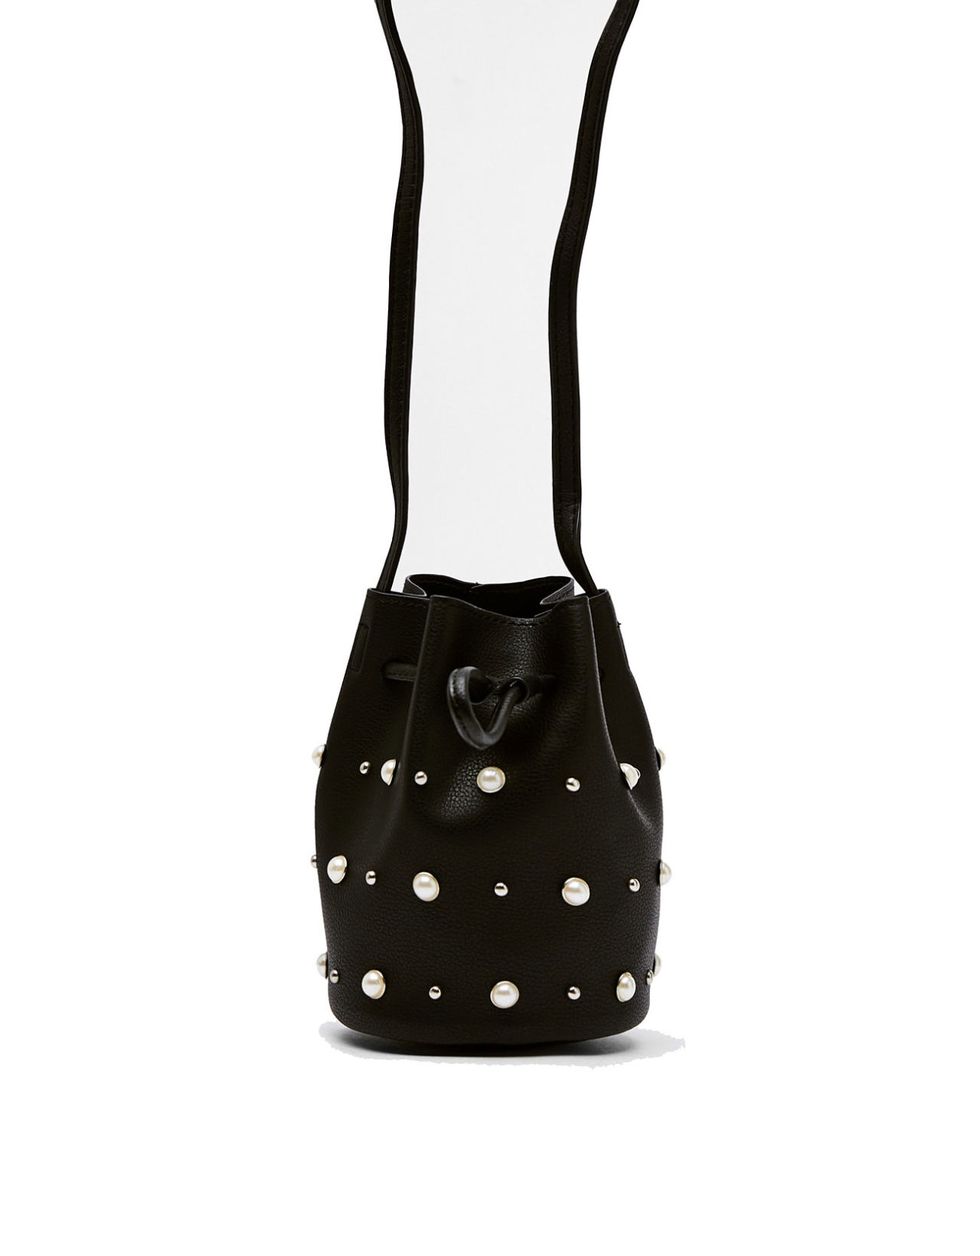 Bag, Black, Handbag, Pattern, Polka dot, Design, Fashion accessory, Shoulder bag, Black-and-white, Leather, 